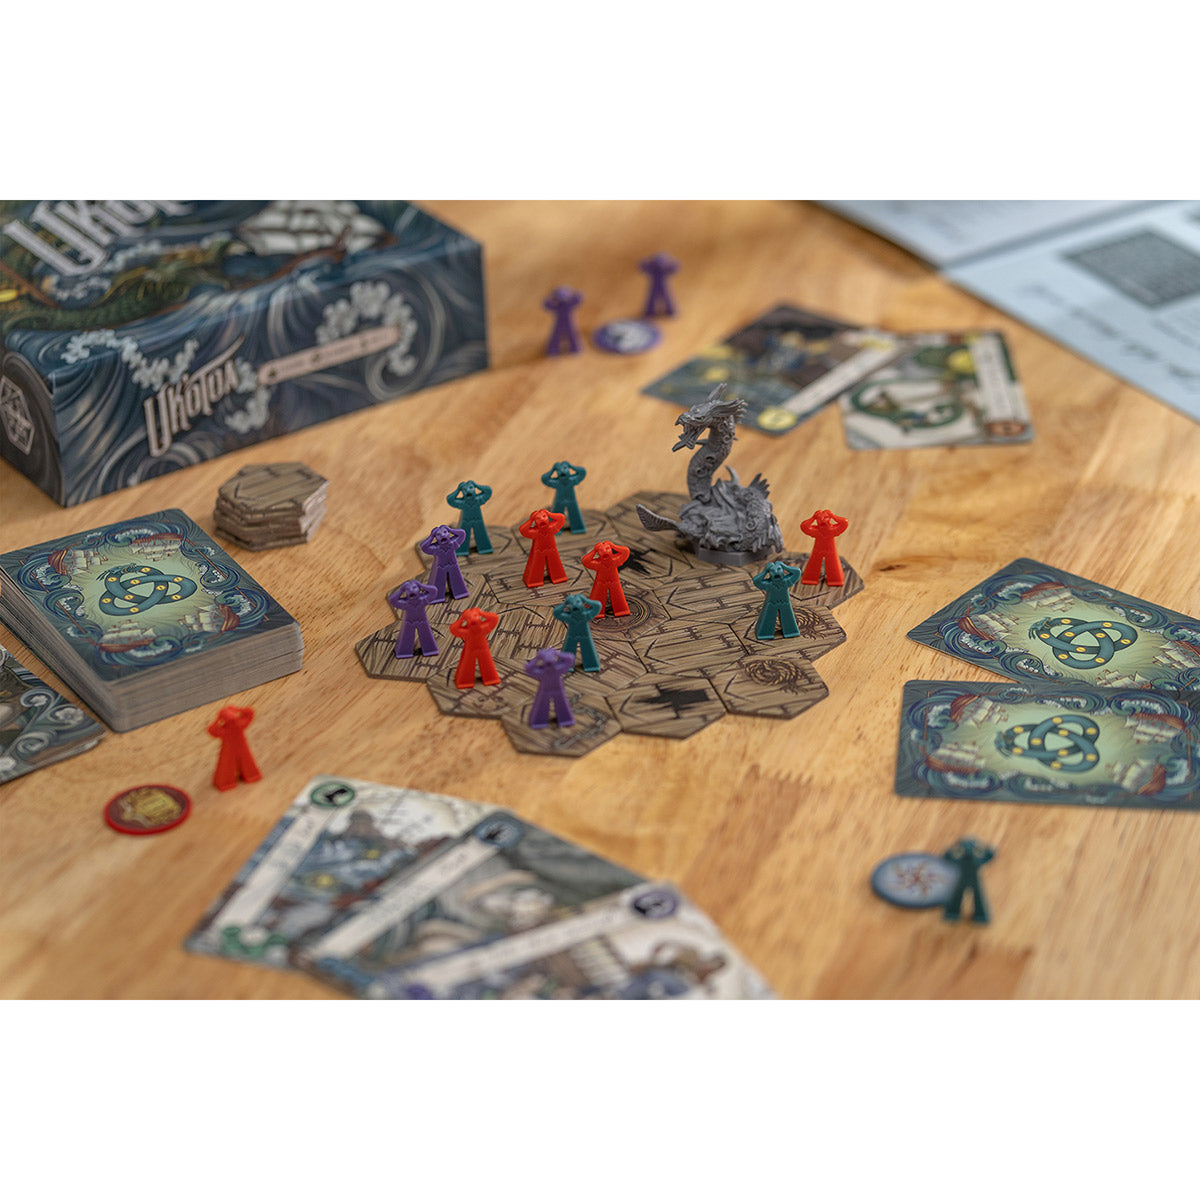 Dice Kingdoms of Valeria | Board Games | Zatu Games UK